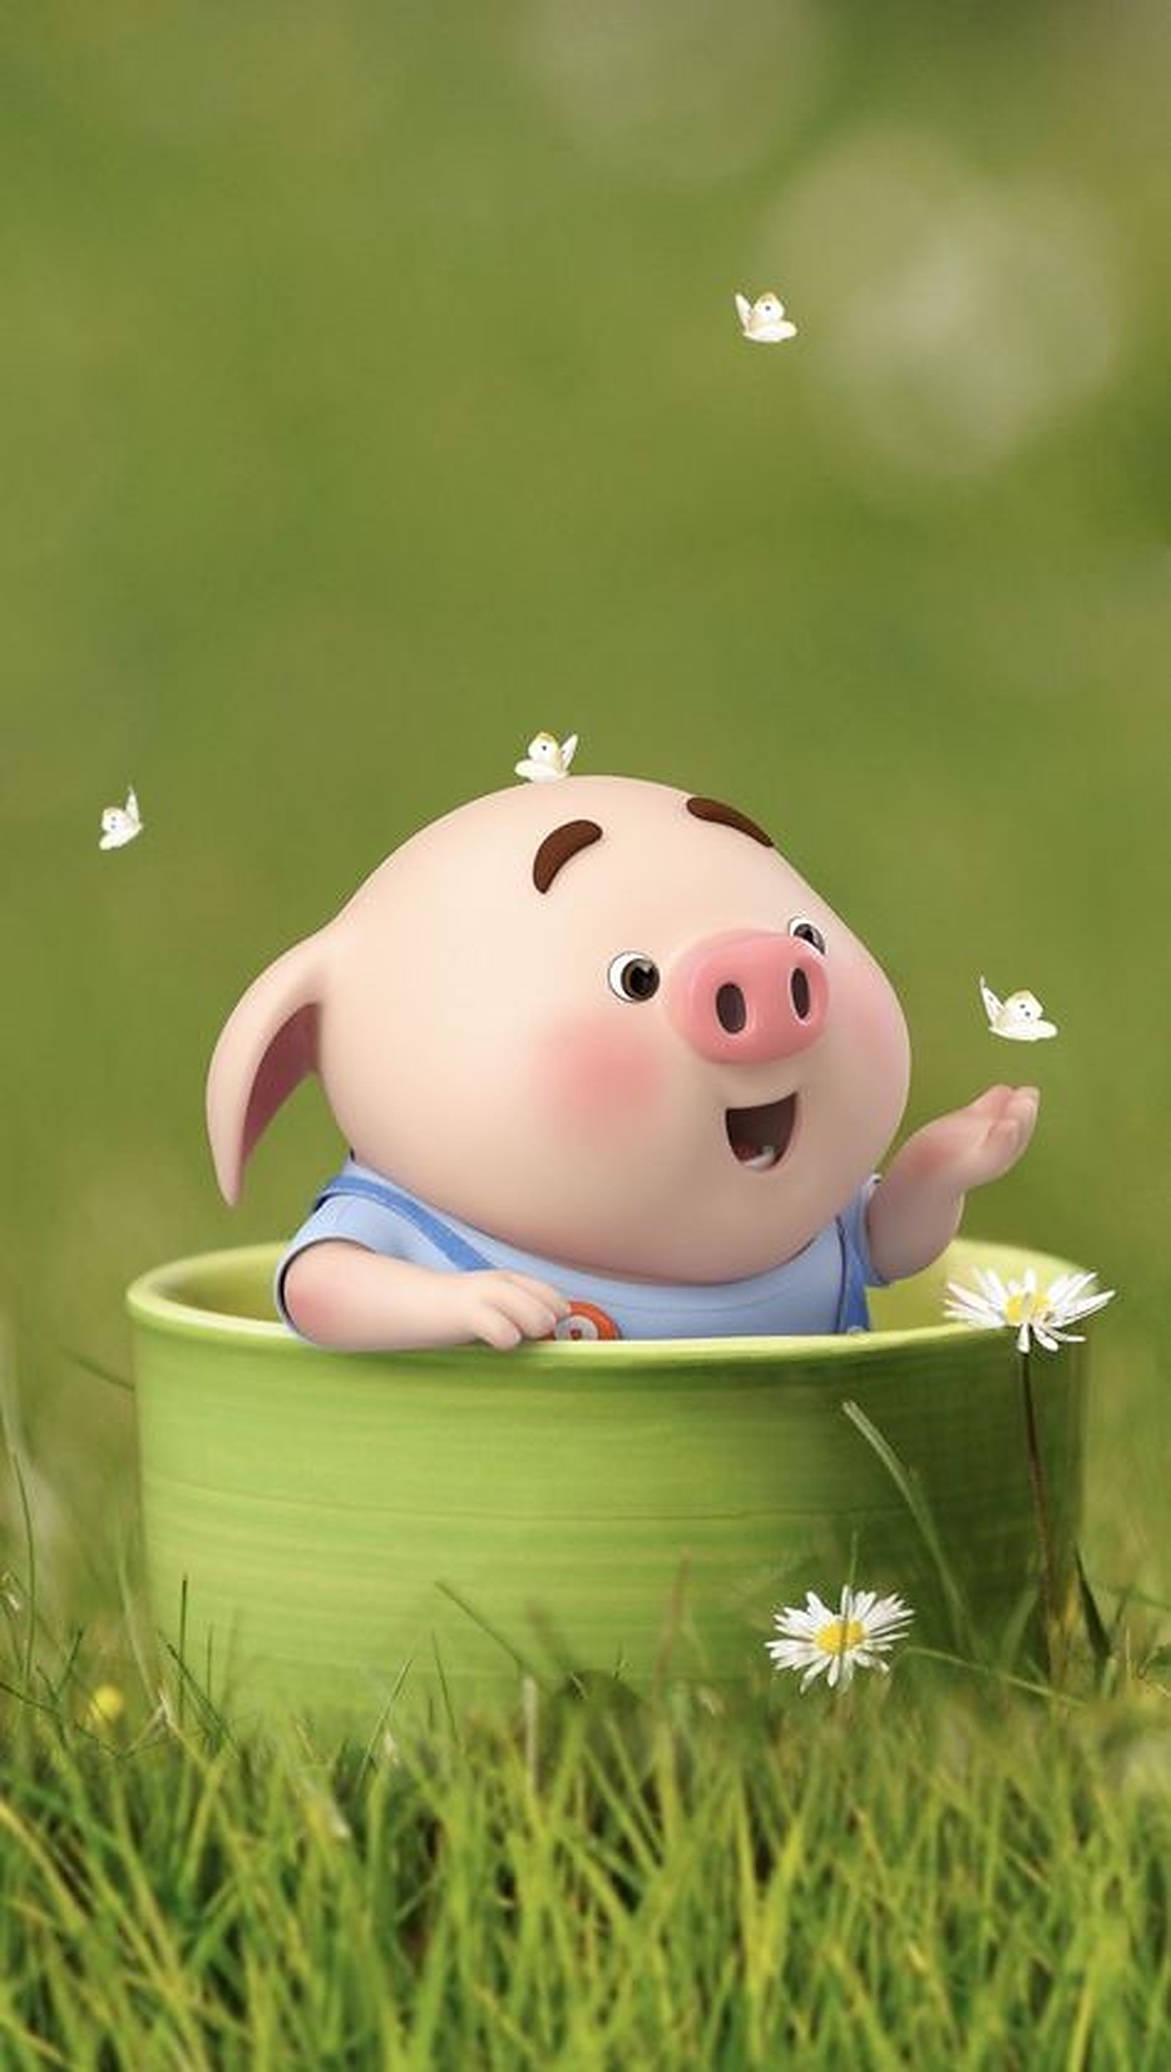 Tải ngay hình nền Lợn đáng yêu đang nằm trong hoa cúc để tạo không gian làm việc và nghỉ ngơi thật yêu thương và đáng nhớ. Hãy truy cập Wallpapers.com ngay nào!